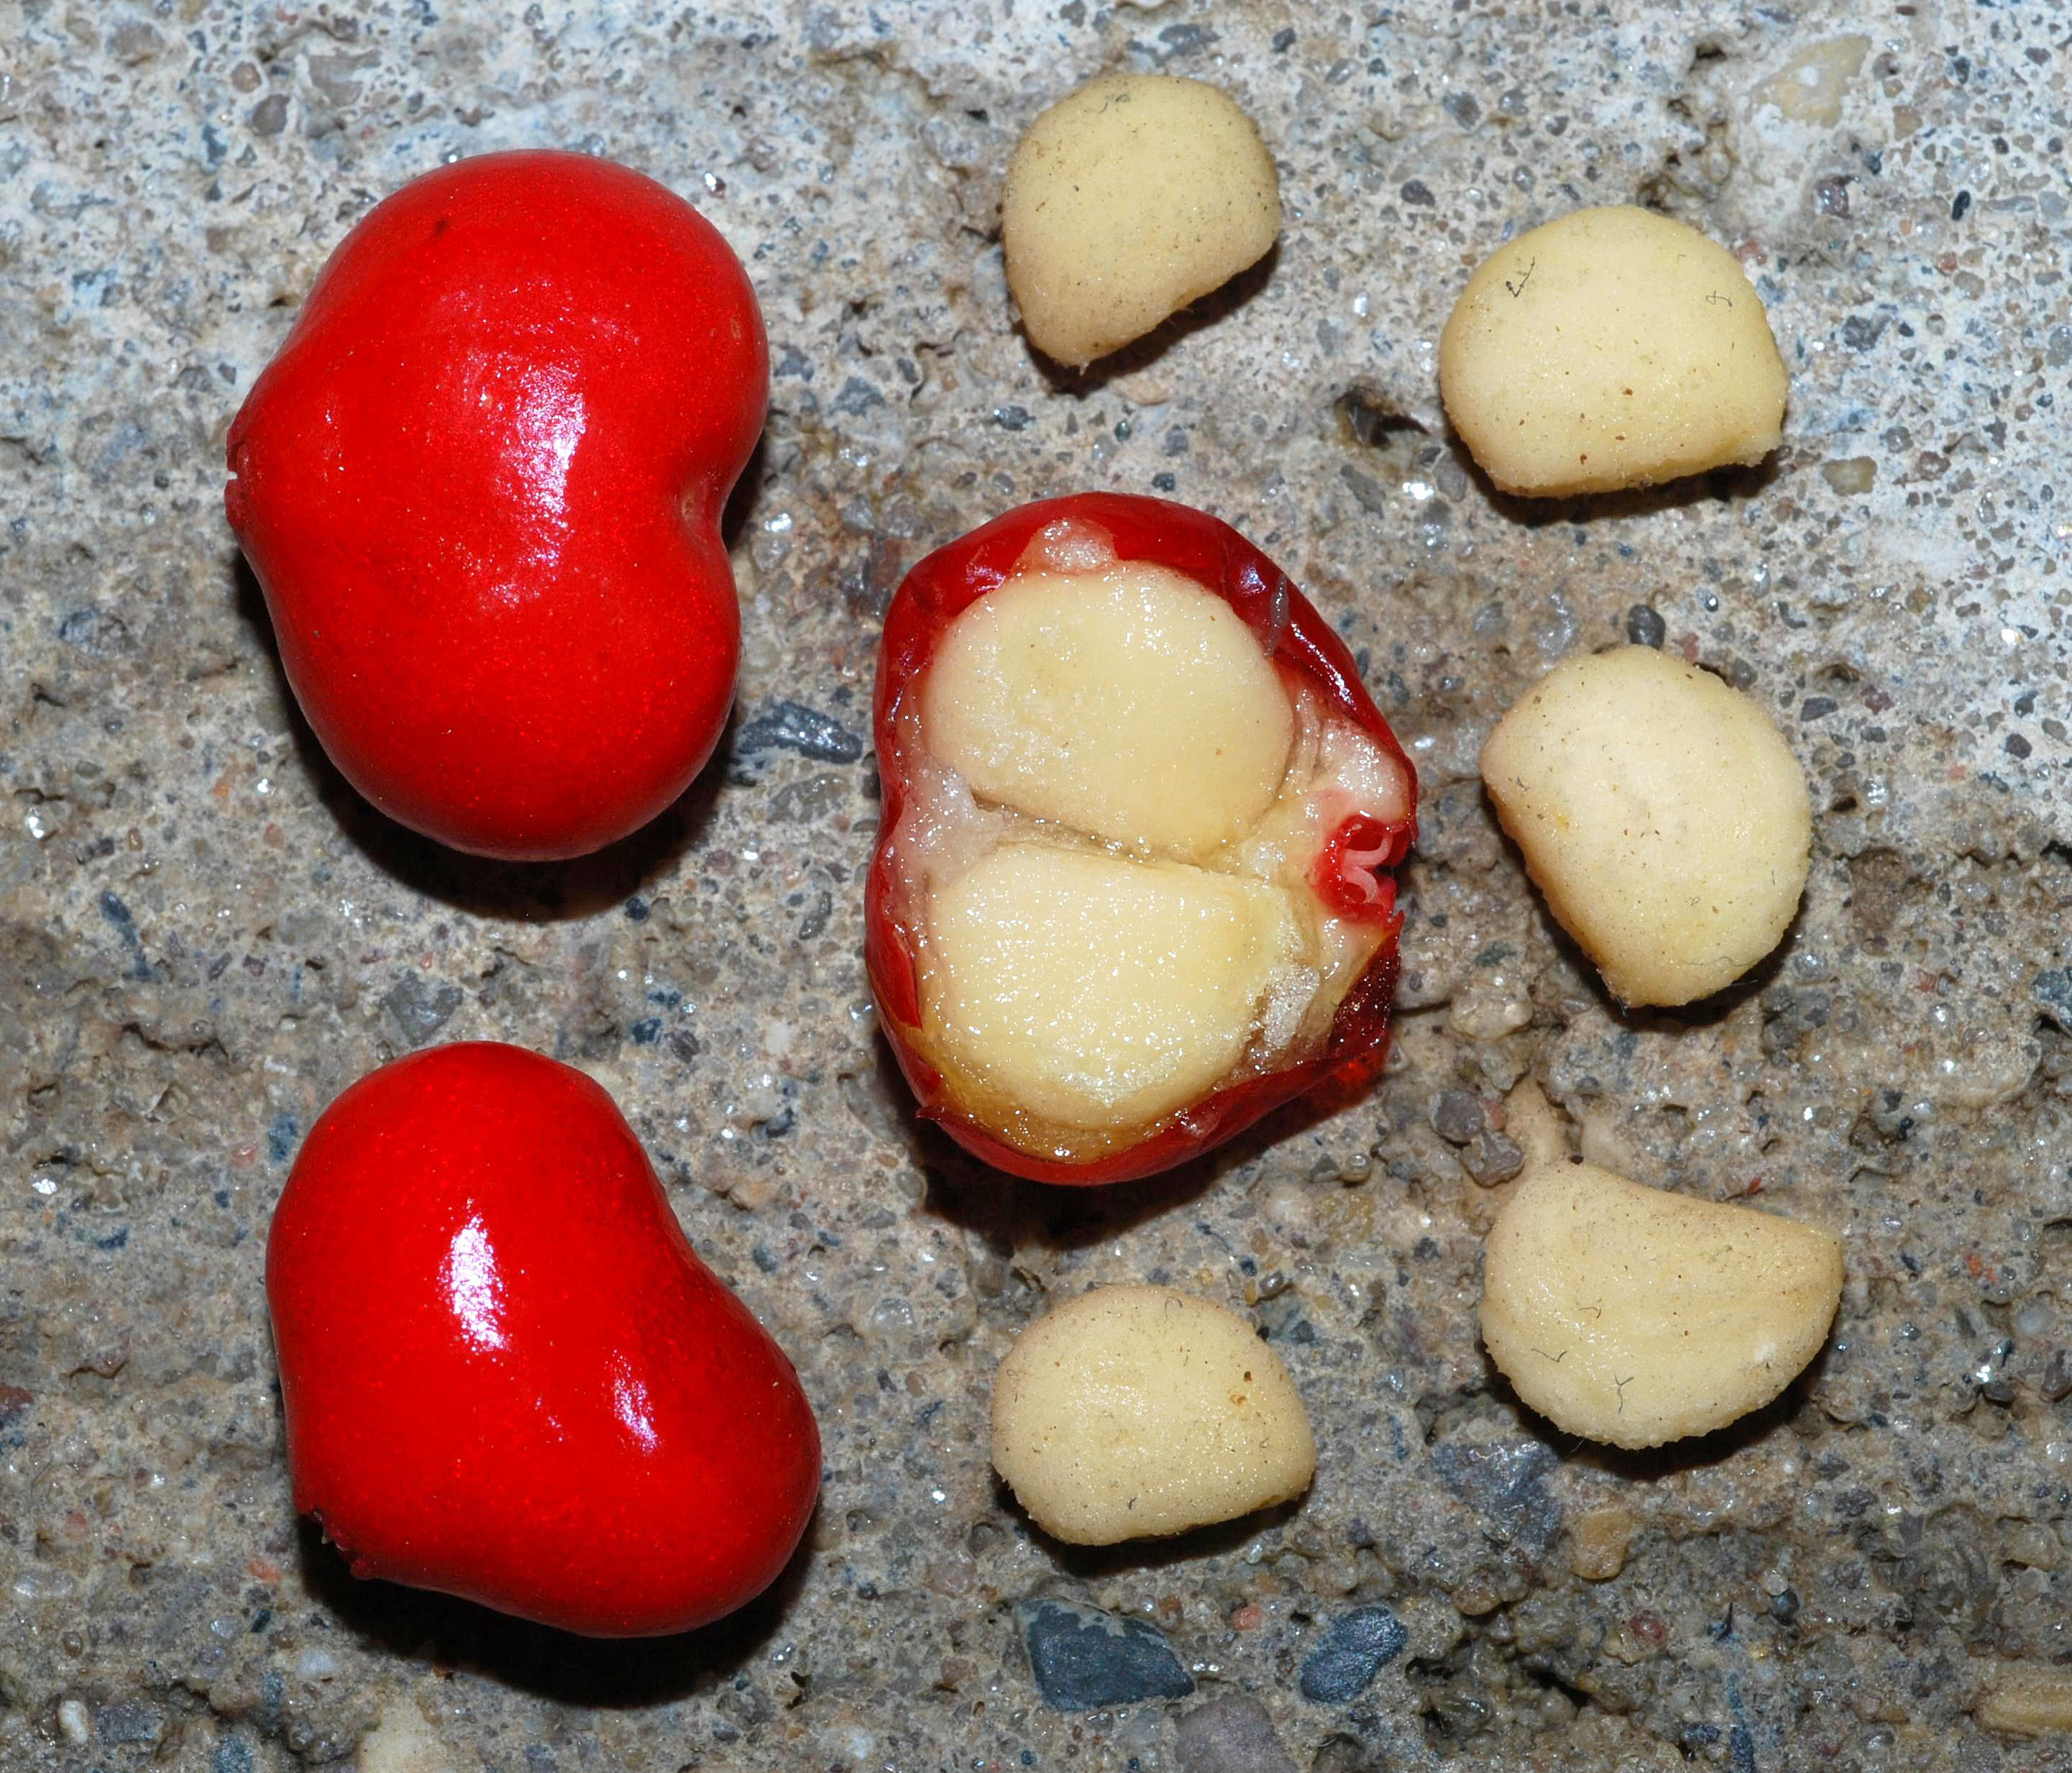 P. quinquefolius - fruits/seeds